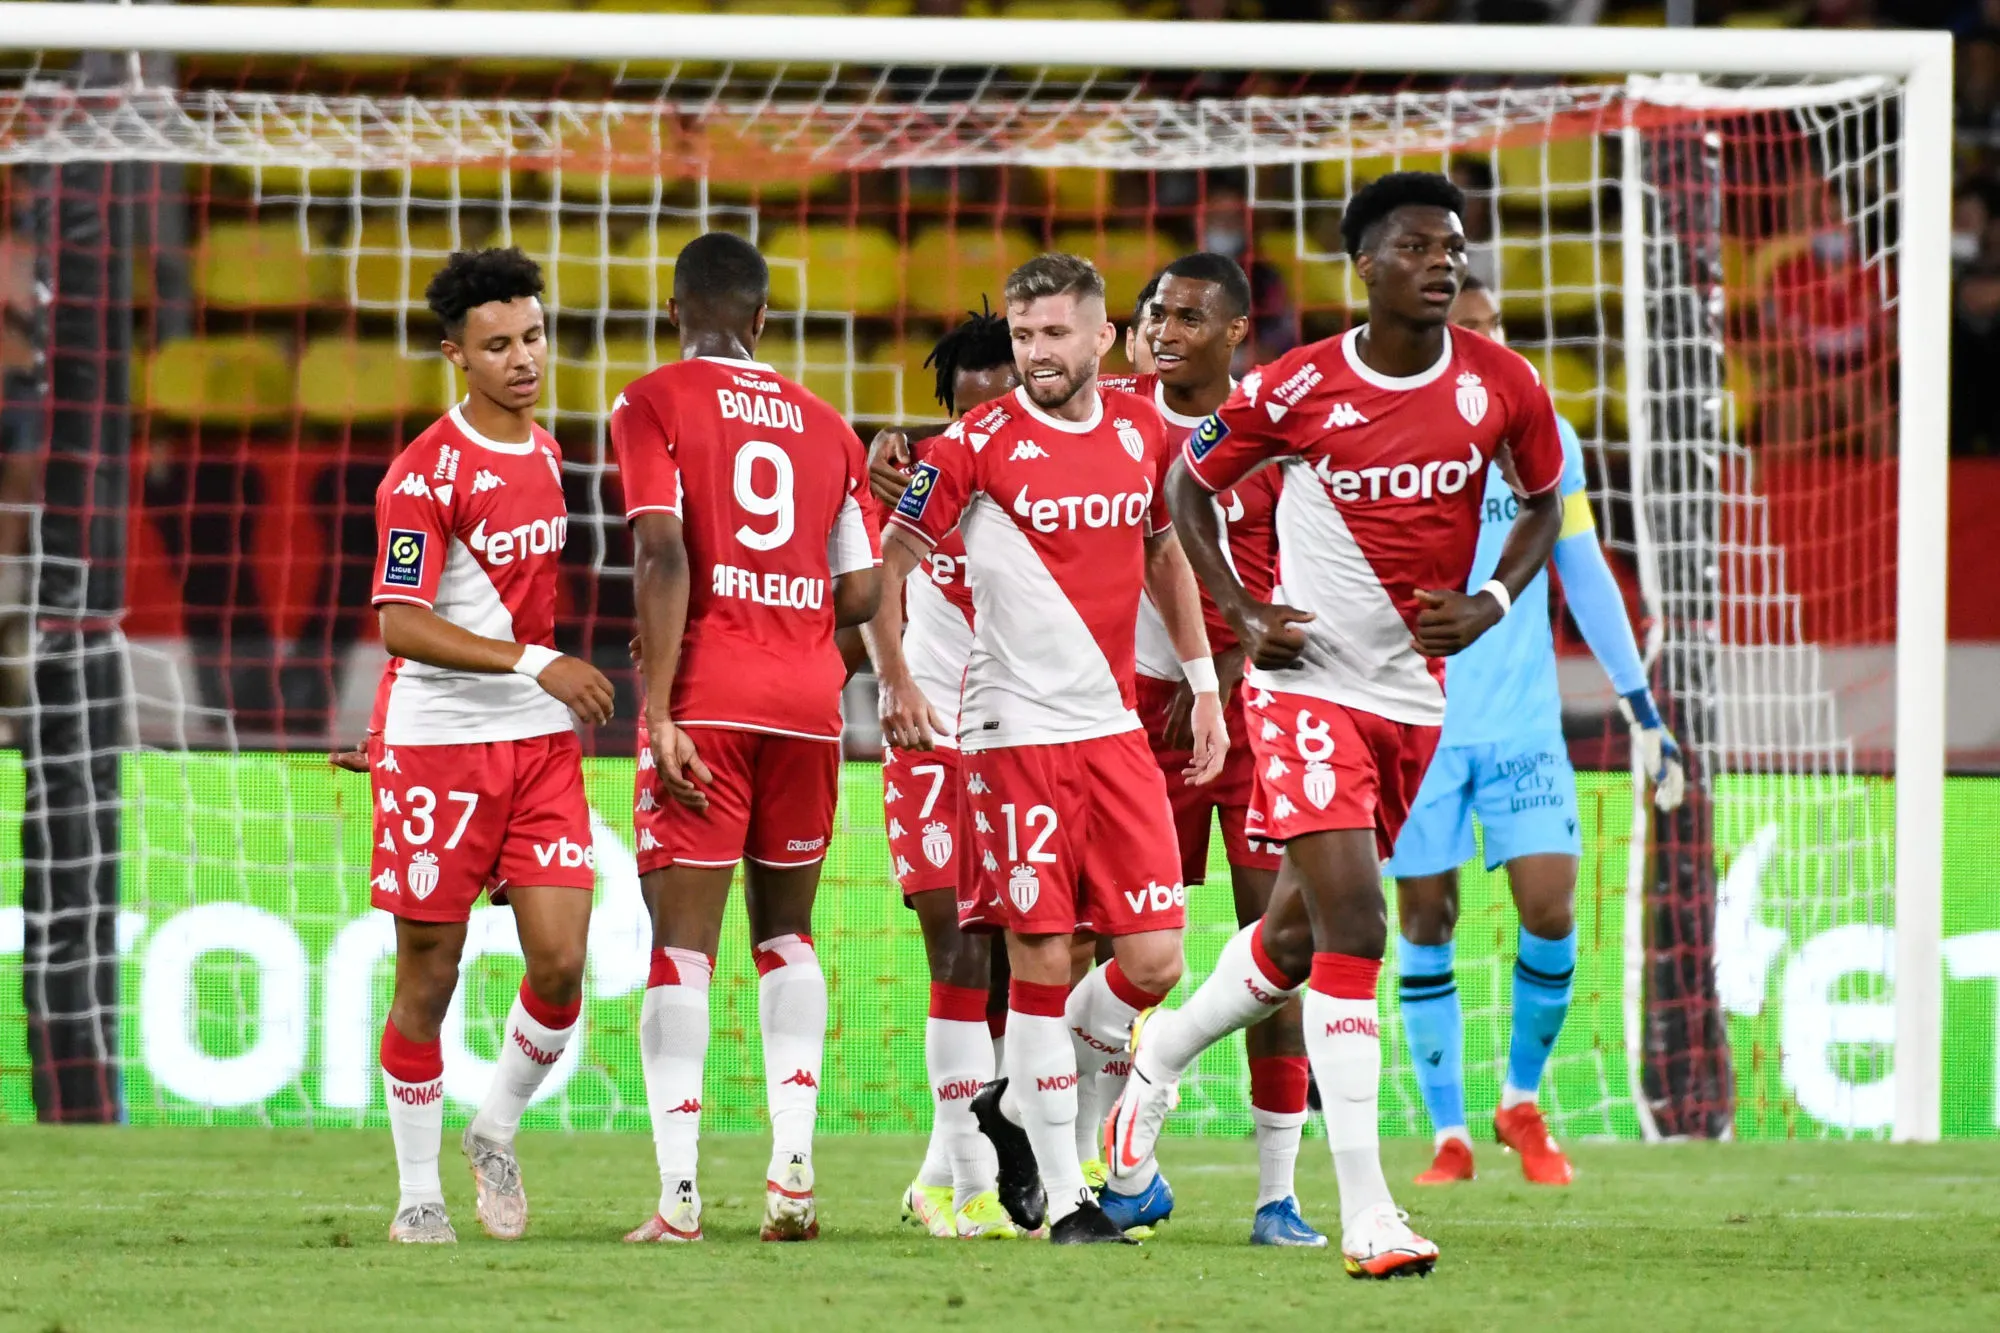 Pronostic Montpellier Monaco : Analyse, cotes et pronostic du match de Ligue 1